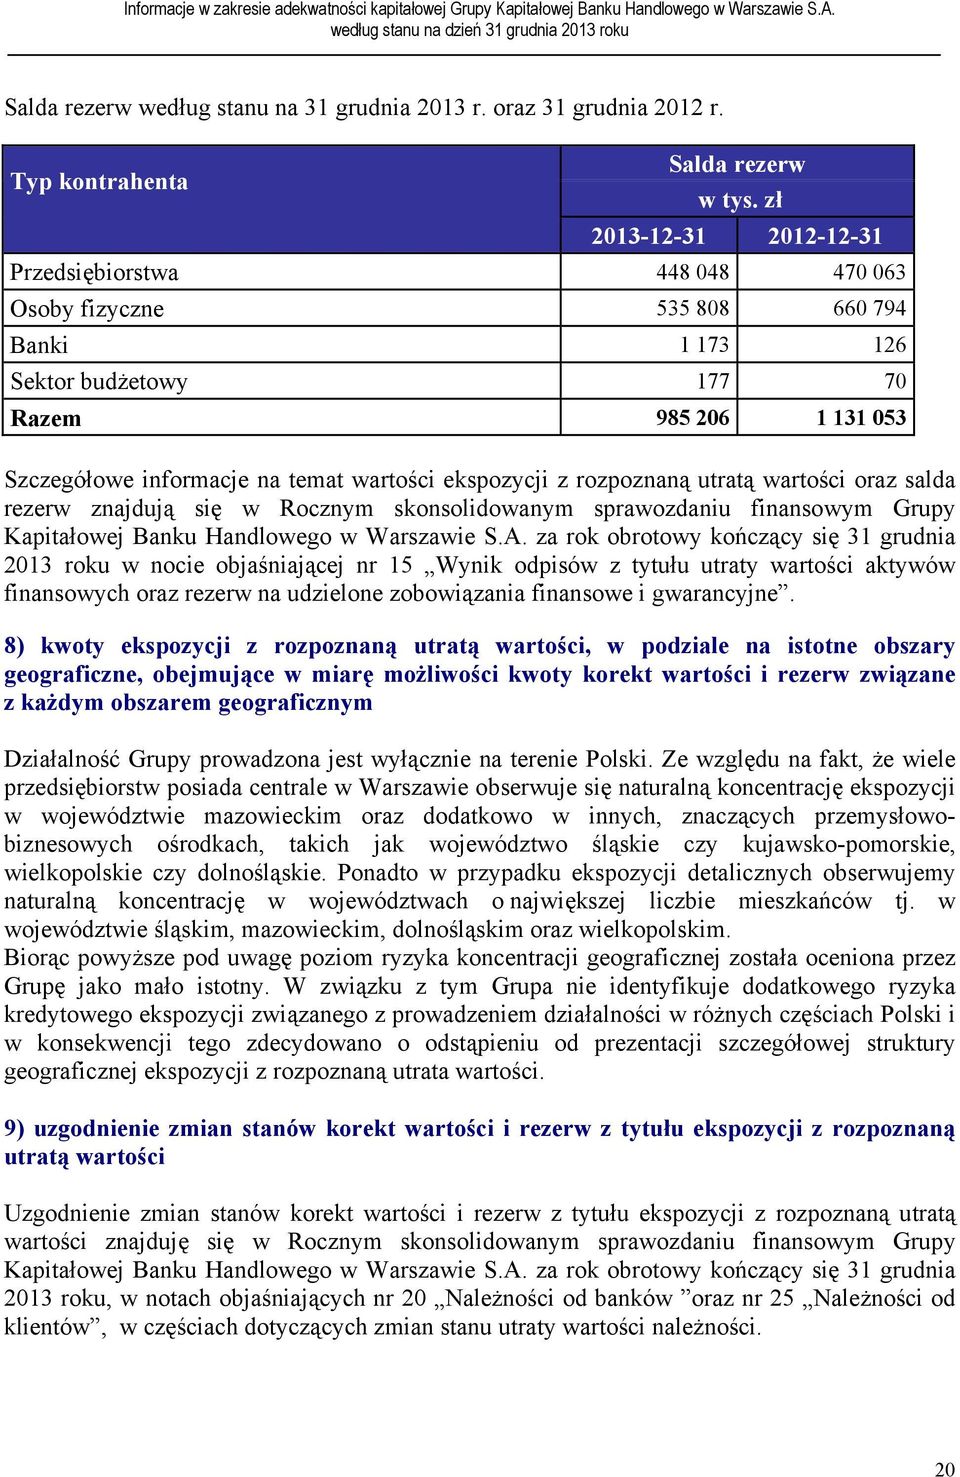 ekspozycji z rozpoznaną utratą wartości oraz salda rezerw znajdują się w Rocznym skonsolidowanym sprawozdaniu finansowym Grupy Kapitałowej Banku Handlowego w Warszawie S.A.